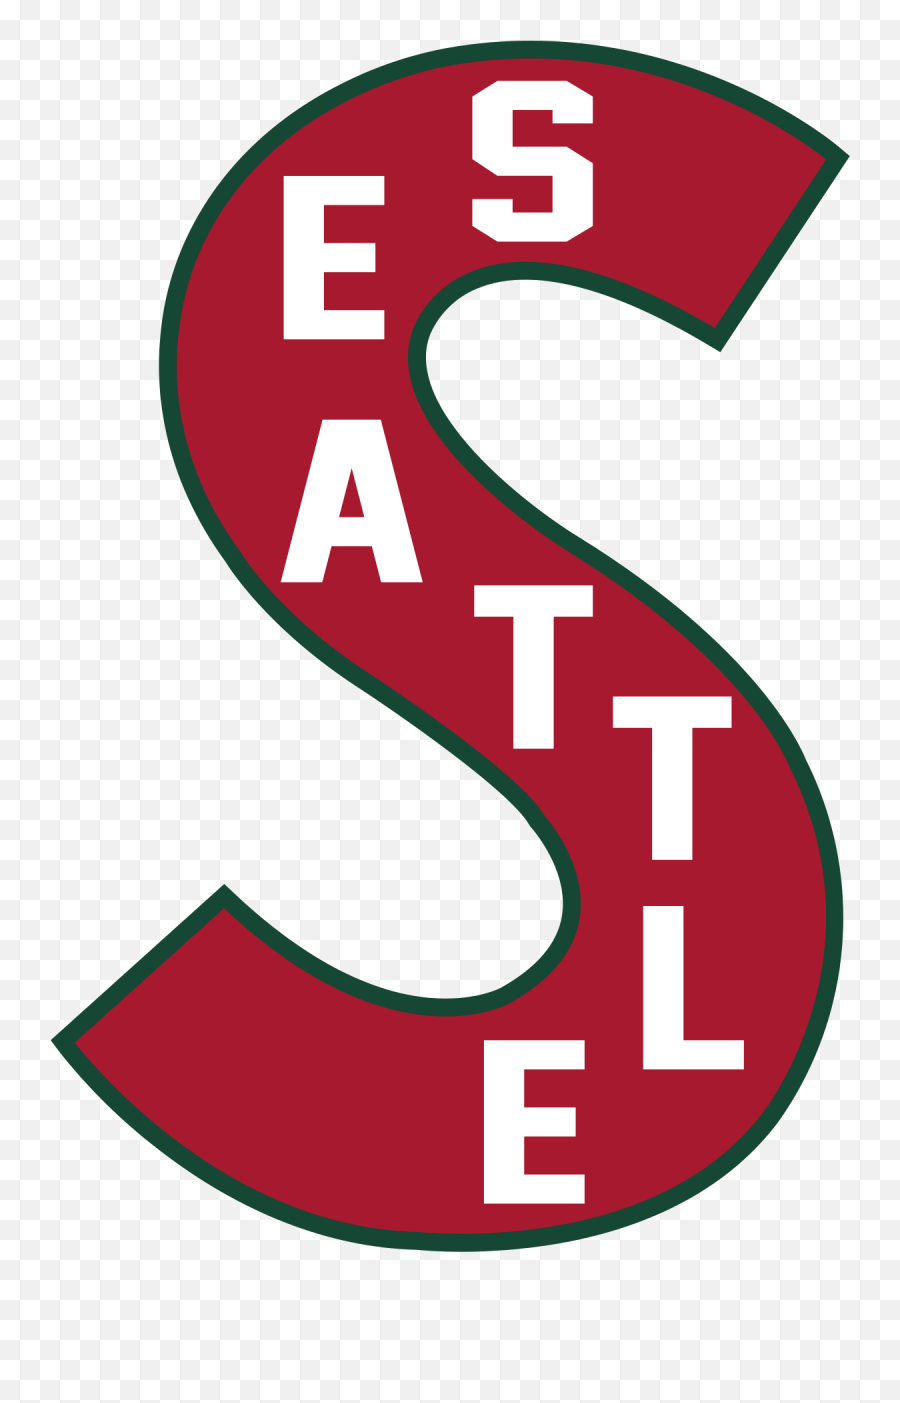 Greg Wyshynski On Twitter My Favorite Thing About The Logo - Seattle Metropolitans Logo Emoji,Thing 1 Logo